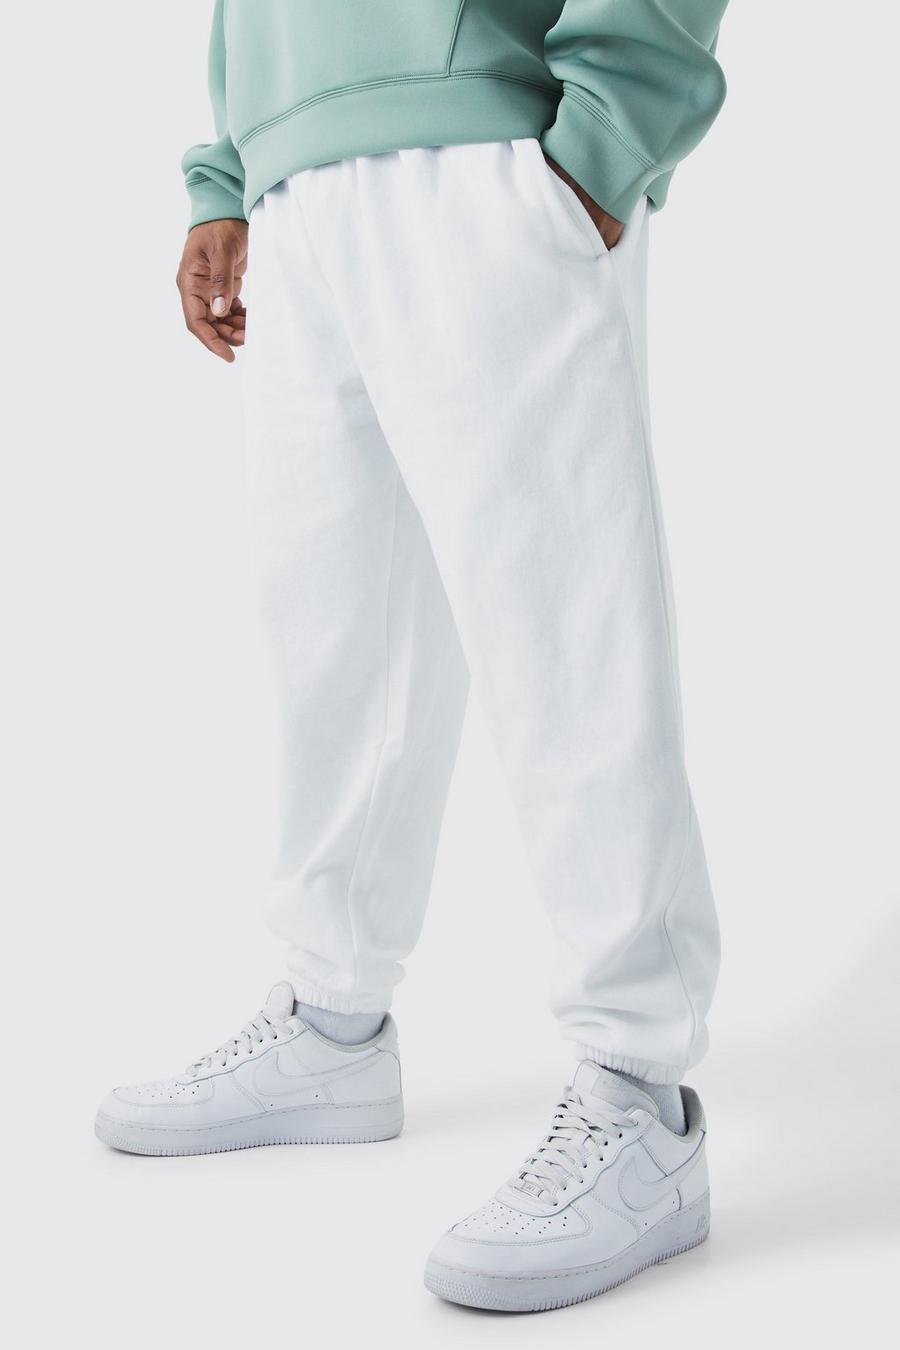 Pantaloni tuta Plus Size Basic Core Fit, White image number 1